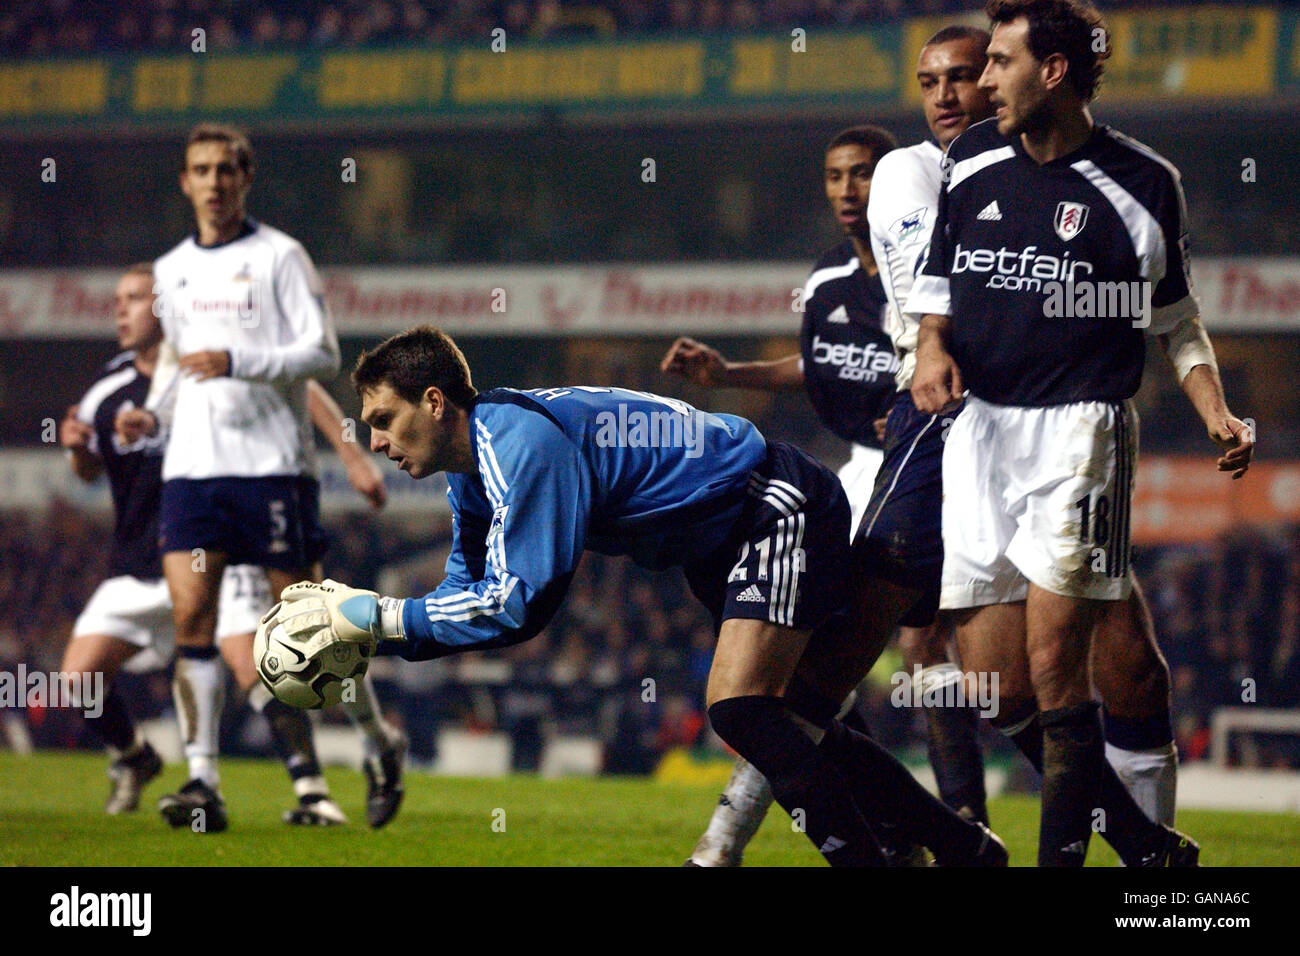 Calcio - fa Barclaycard Premiership - Tottenham Hotspur v Fulham. Martin Herrera, portiere di Fulham, salva la palla per negare a Tottenham un obiettivo vincente Foto Stock